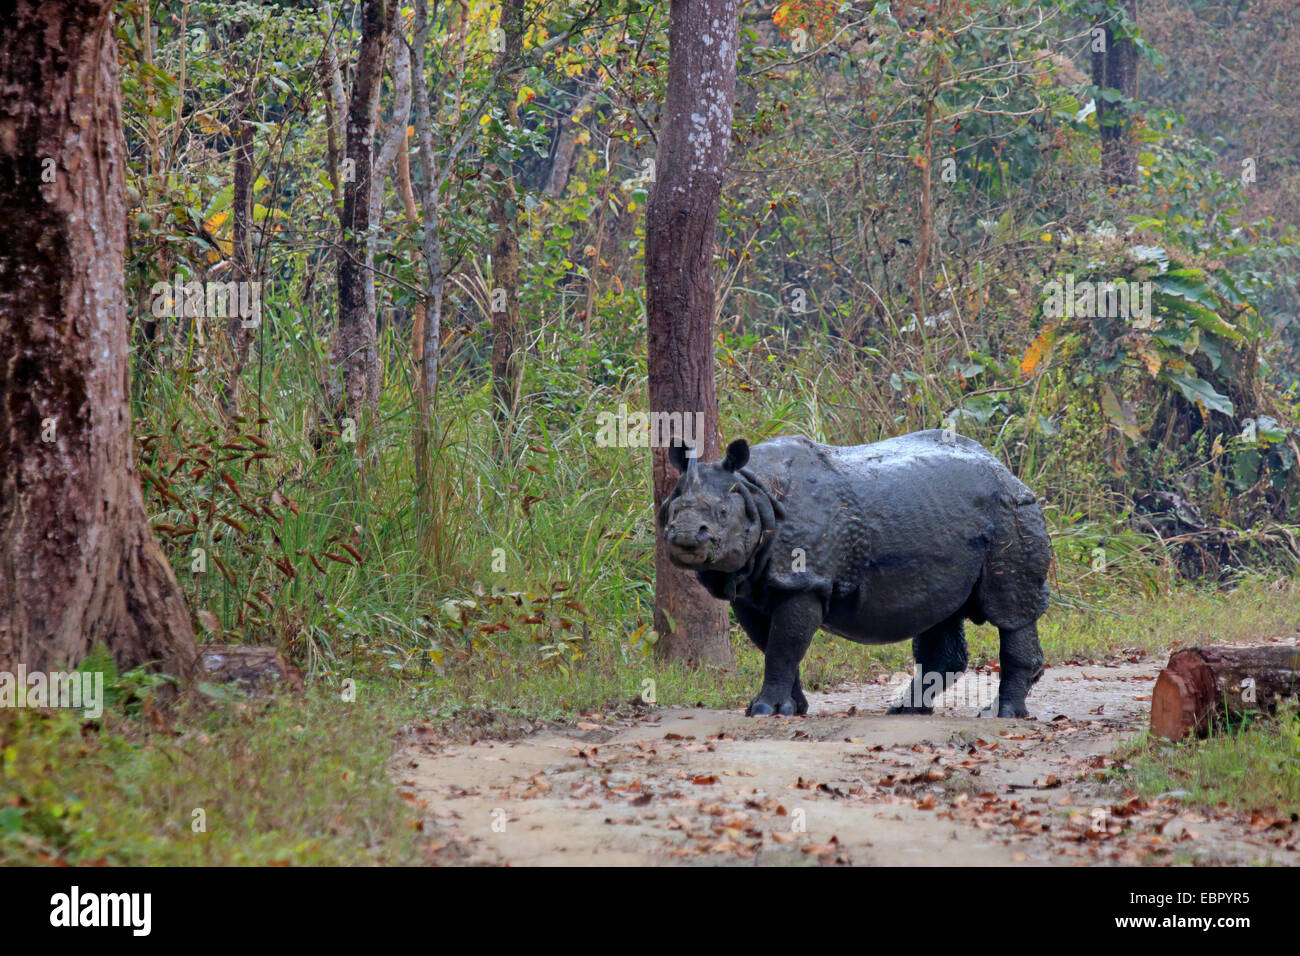 Plus de rhinocéros indien, Indien Grand rhinocéros à une corne (Rhinoceros unicornis), debout sur un chemin forestier , Népal, Terai, parc national de Chitwan Banque D'Images